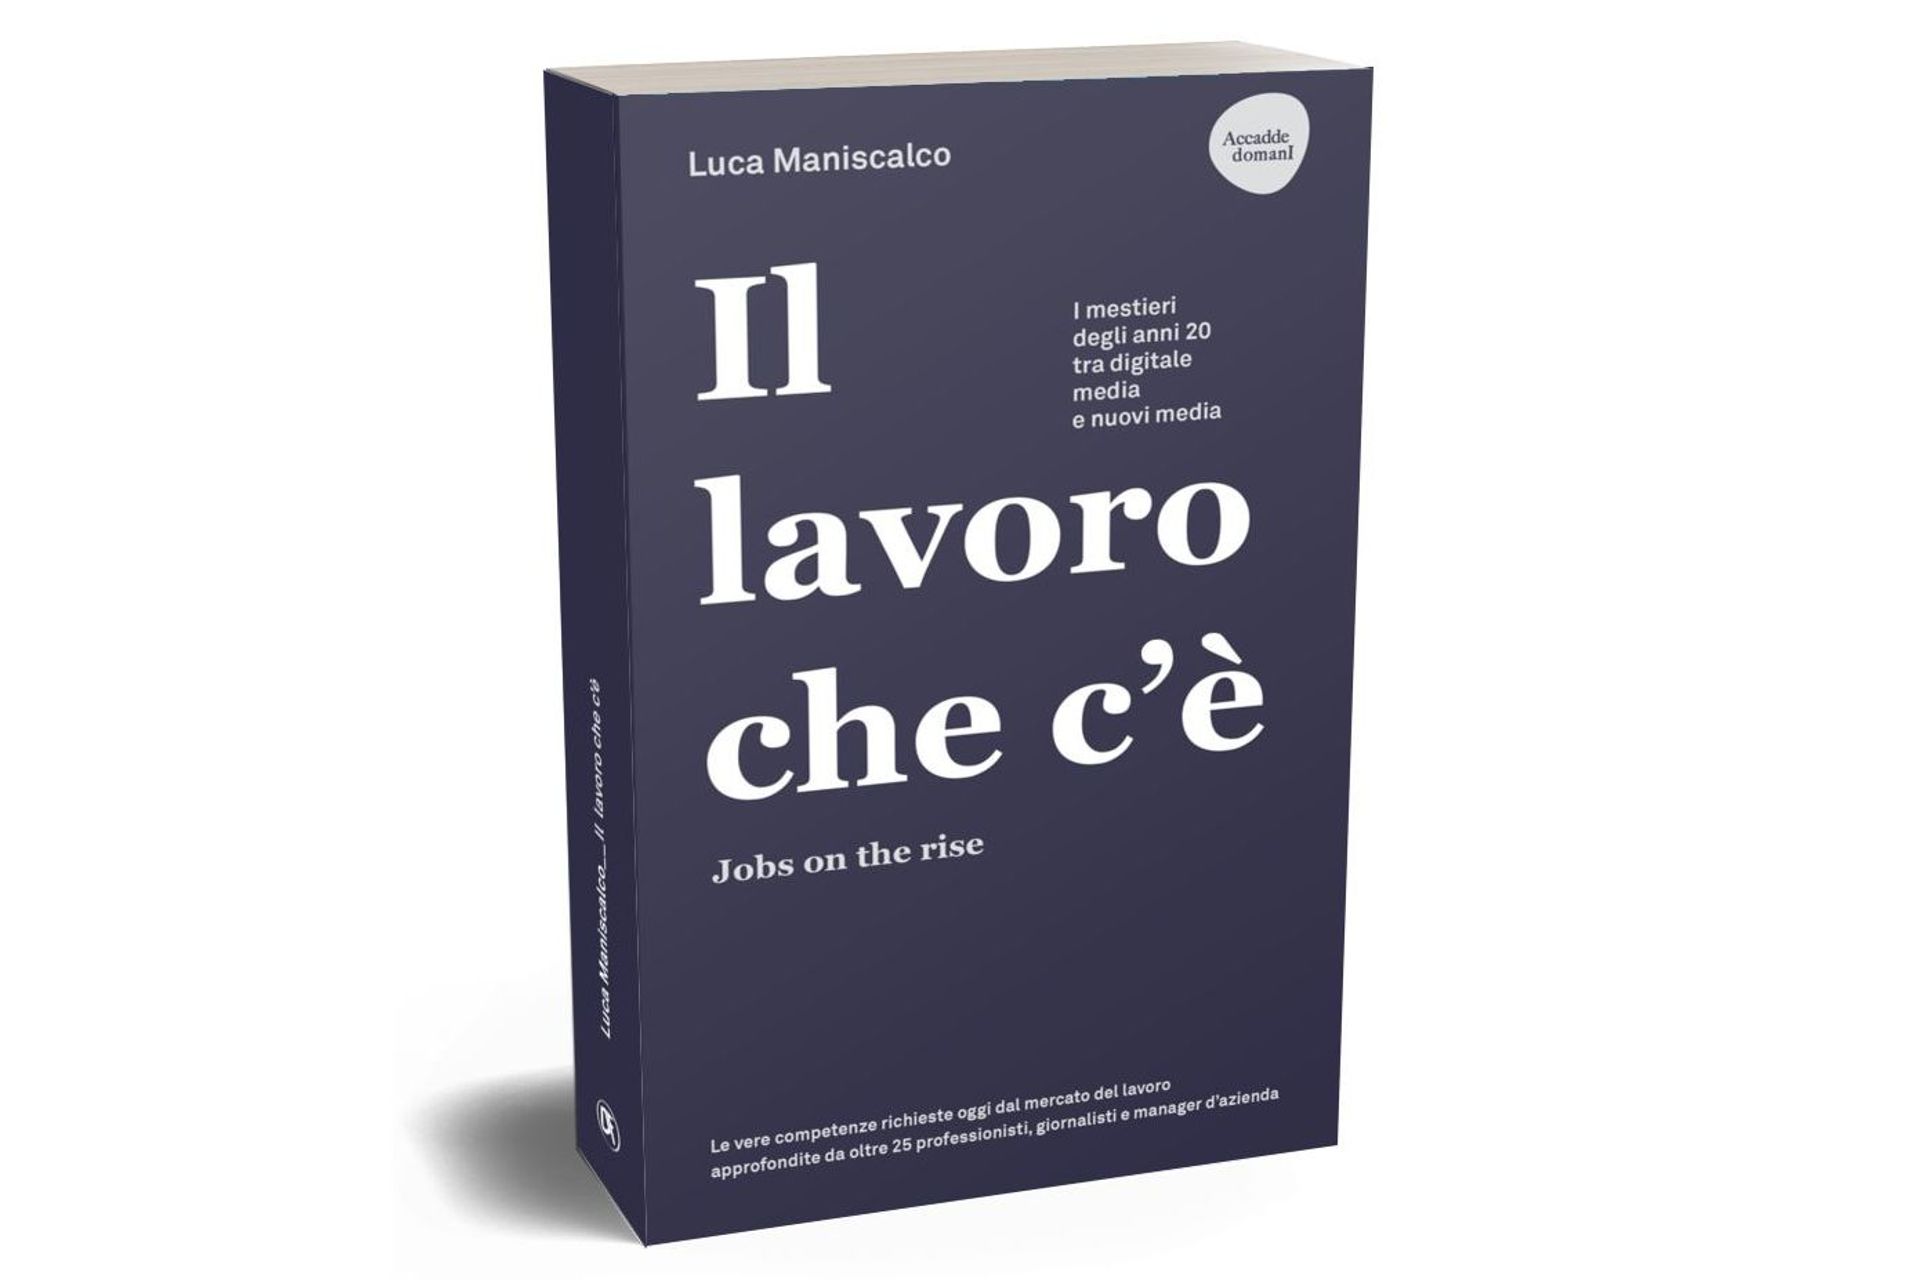 La copertina del libro “Il lavoro che c’è. Jobs on the rise” di Luca Maniscalco, edito dalla Dario Flaccovio Editore